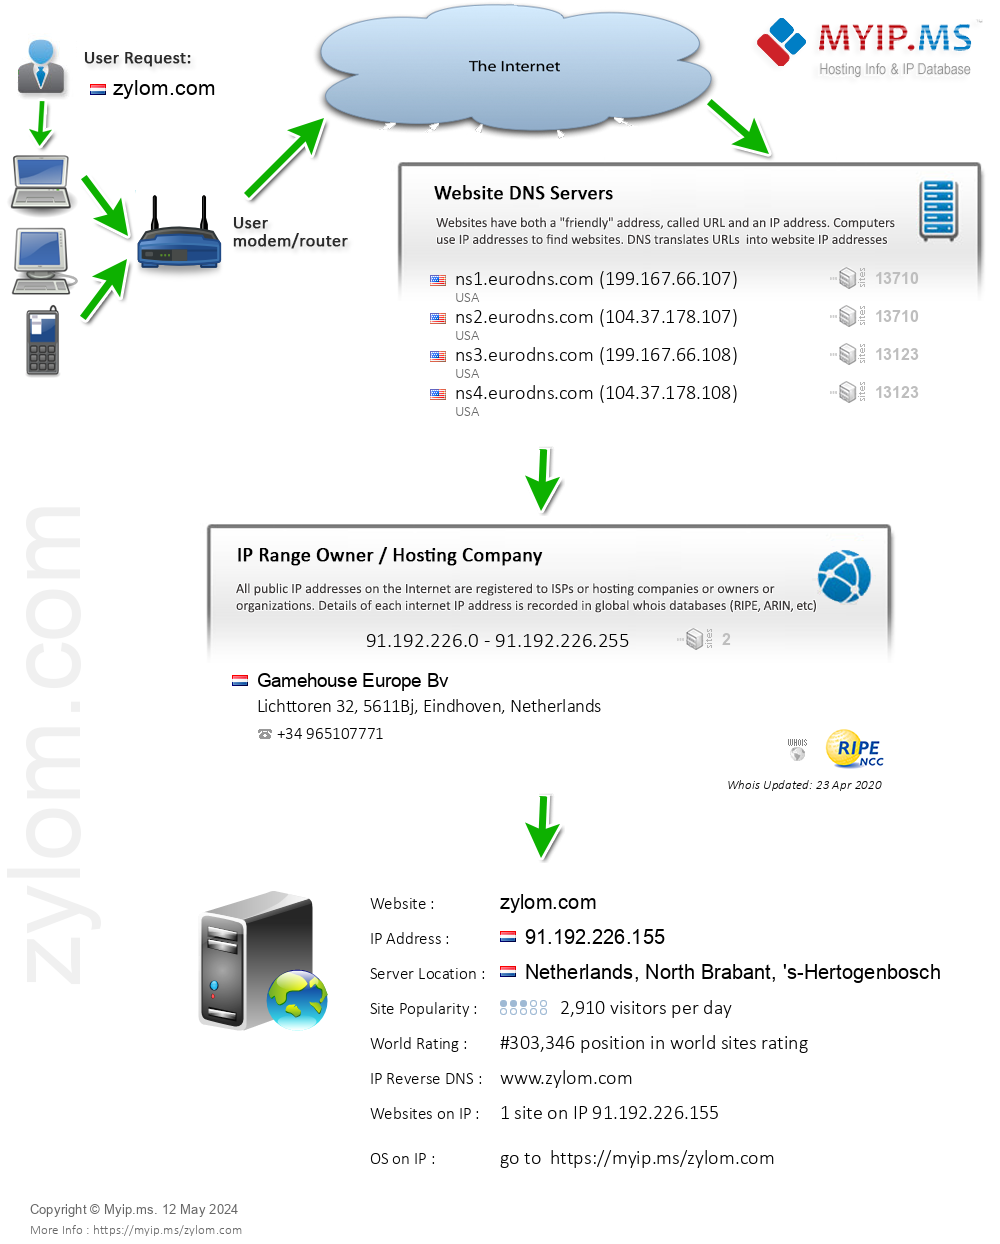 Zylom.com - Website Hosting Visual IP Diagram